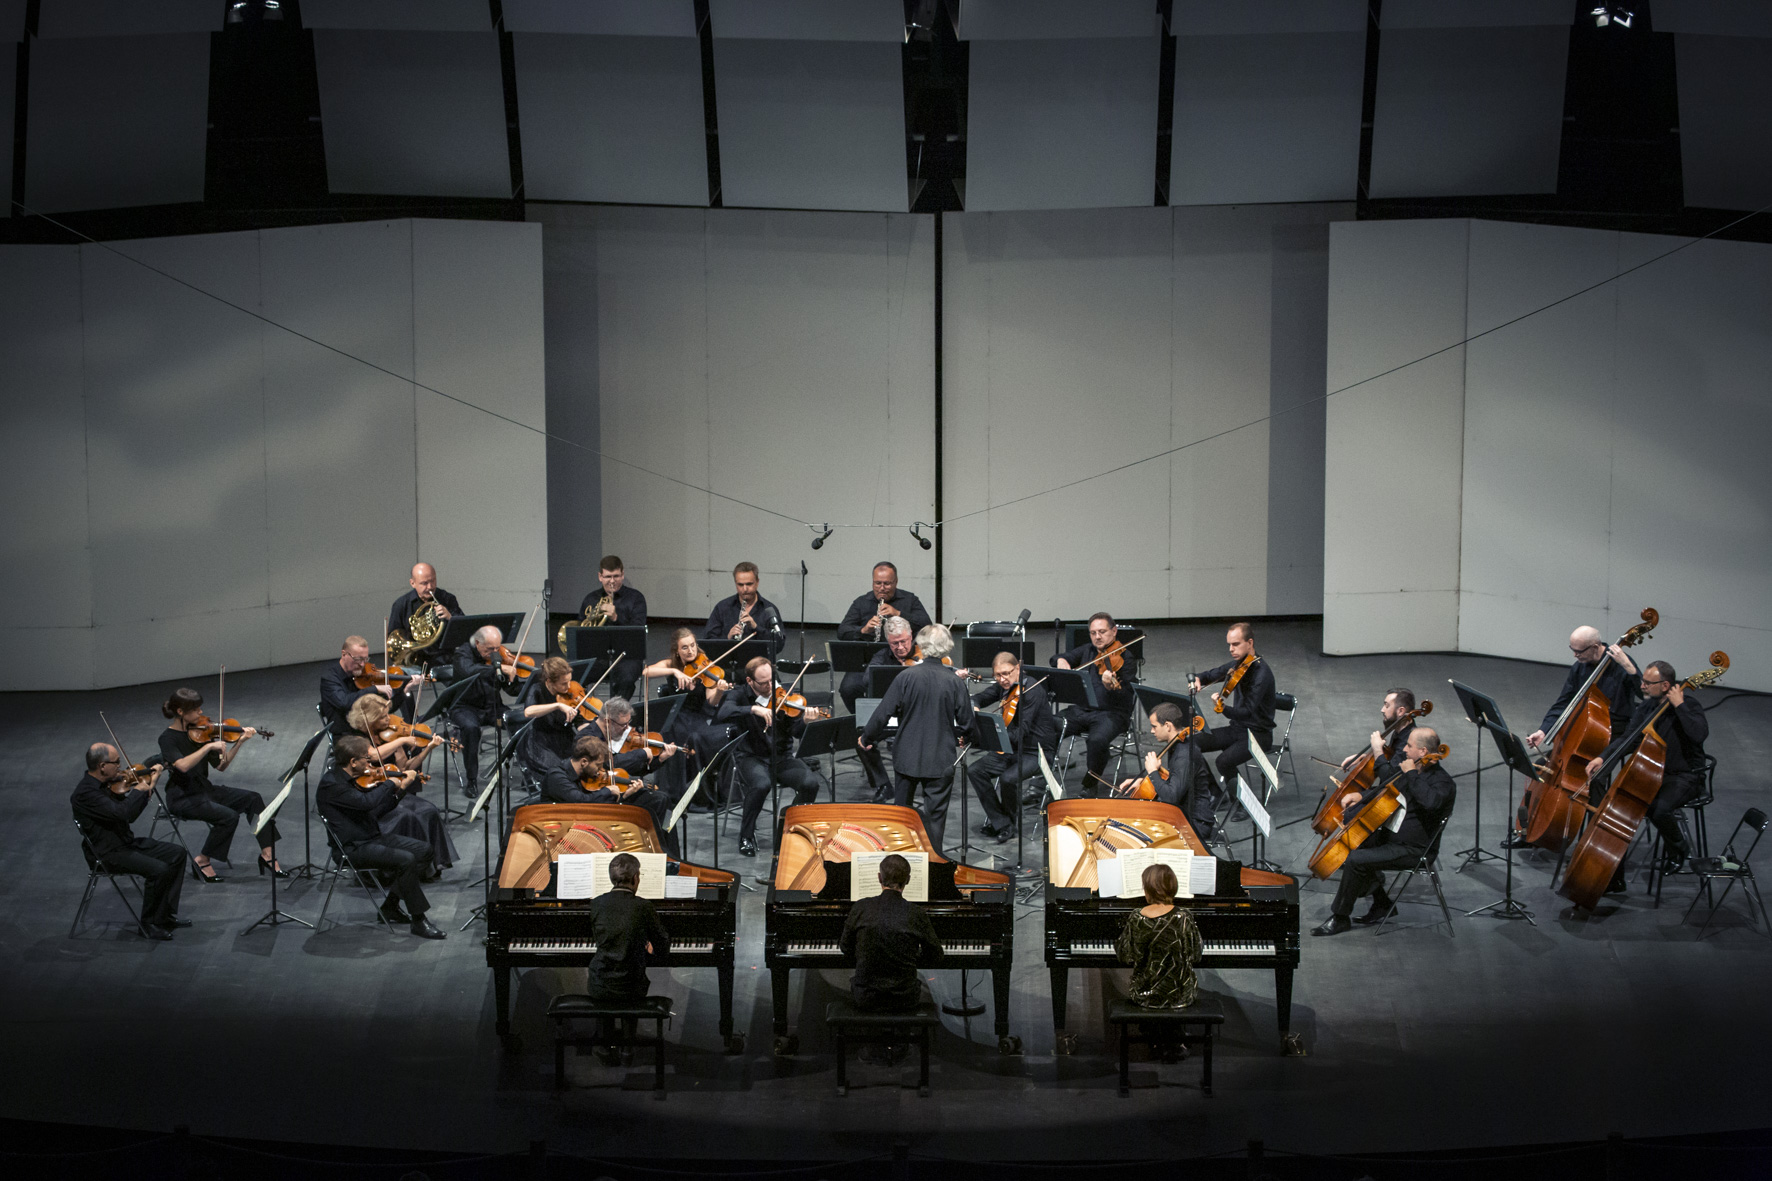 Muzycy orkiestry wraz z solista i dyrygentem grają na scenie w czasie koncertu